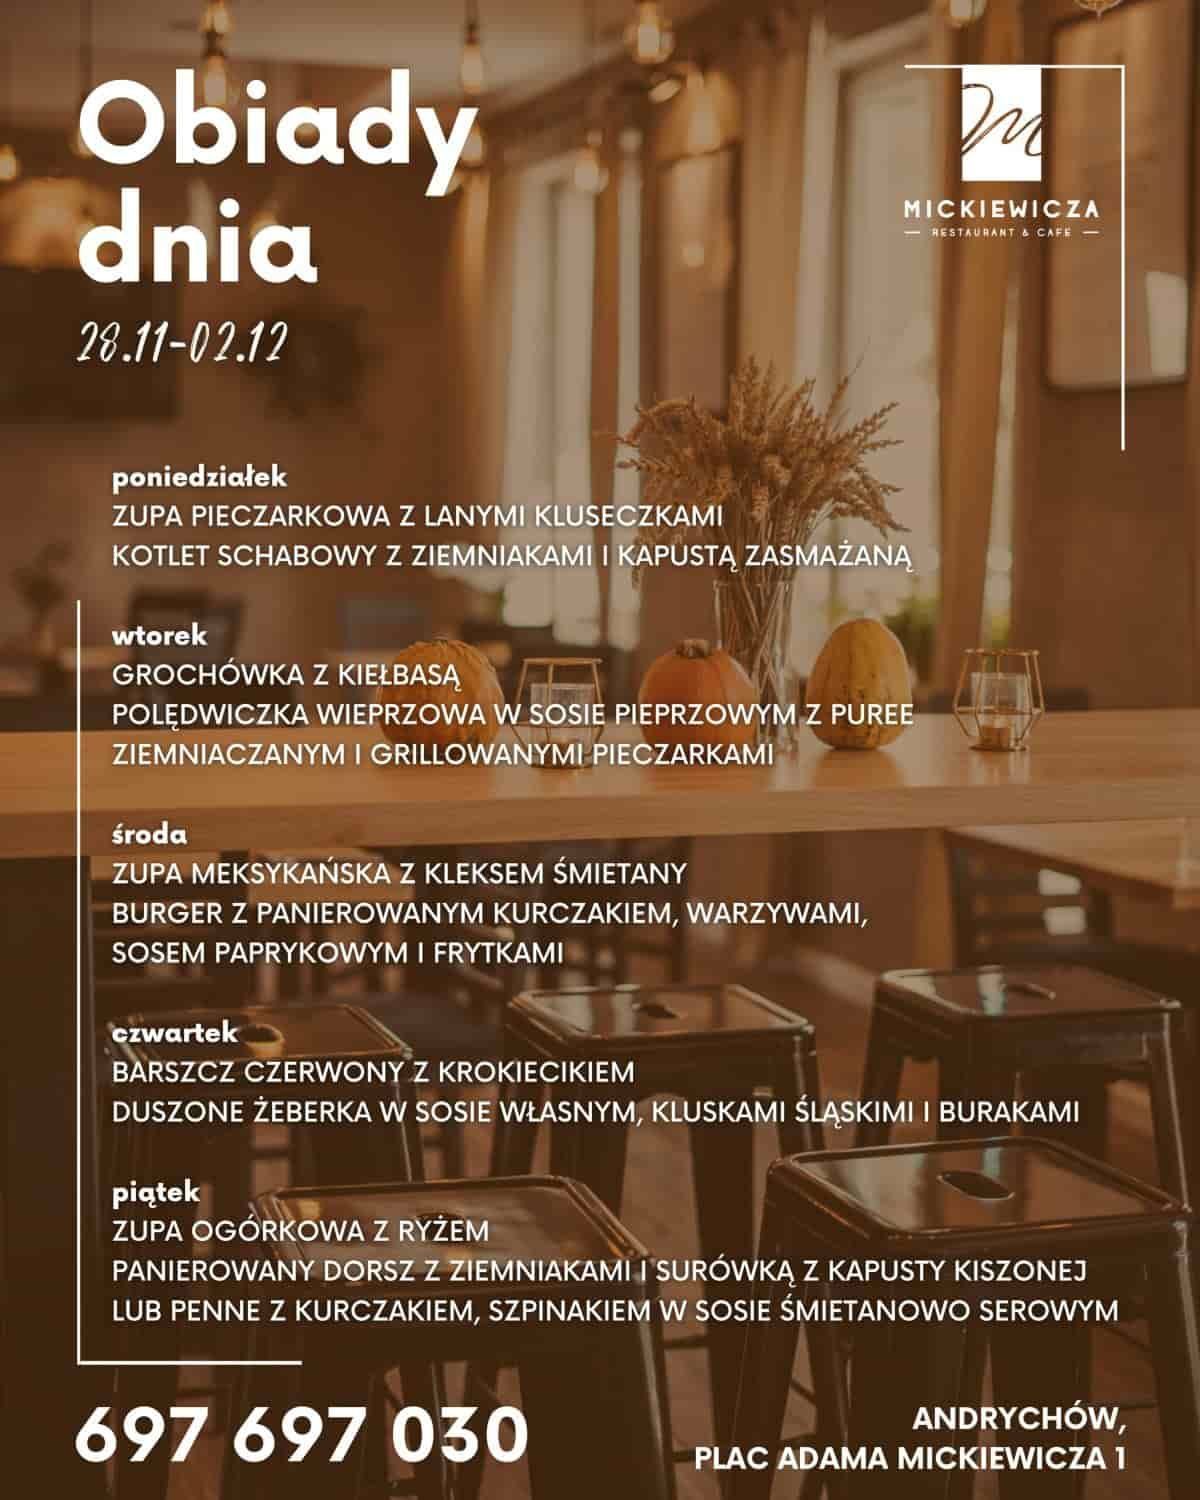 Obiady Dnia w restauracji Mickiewicza w Andrychowie. 28.11 - 2.12